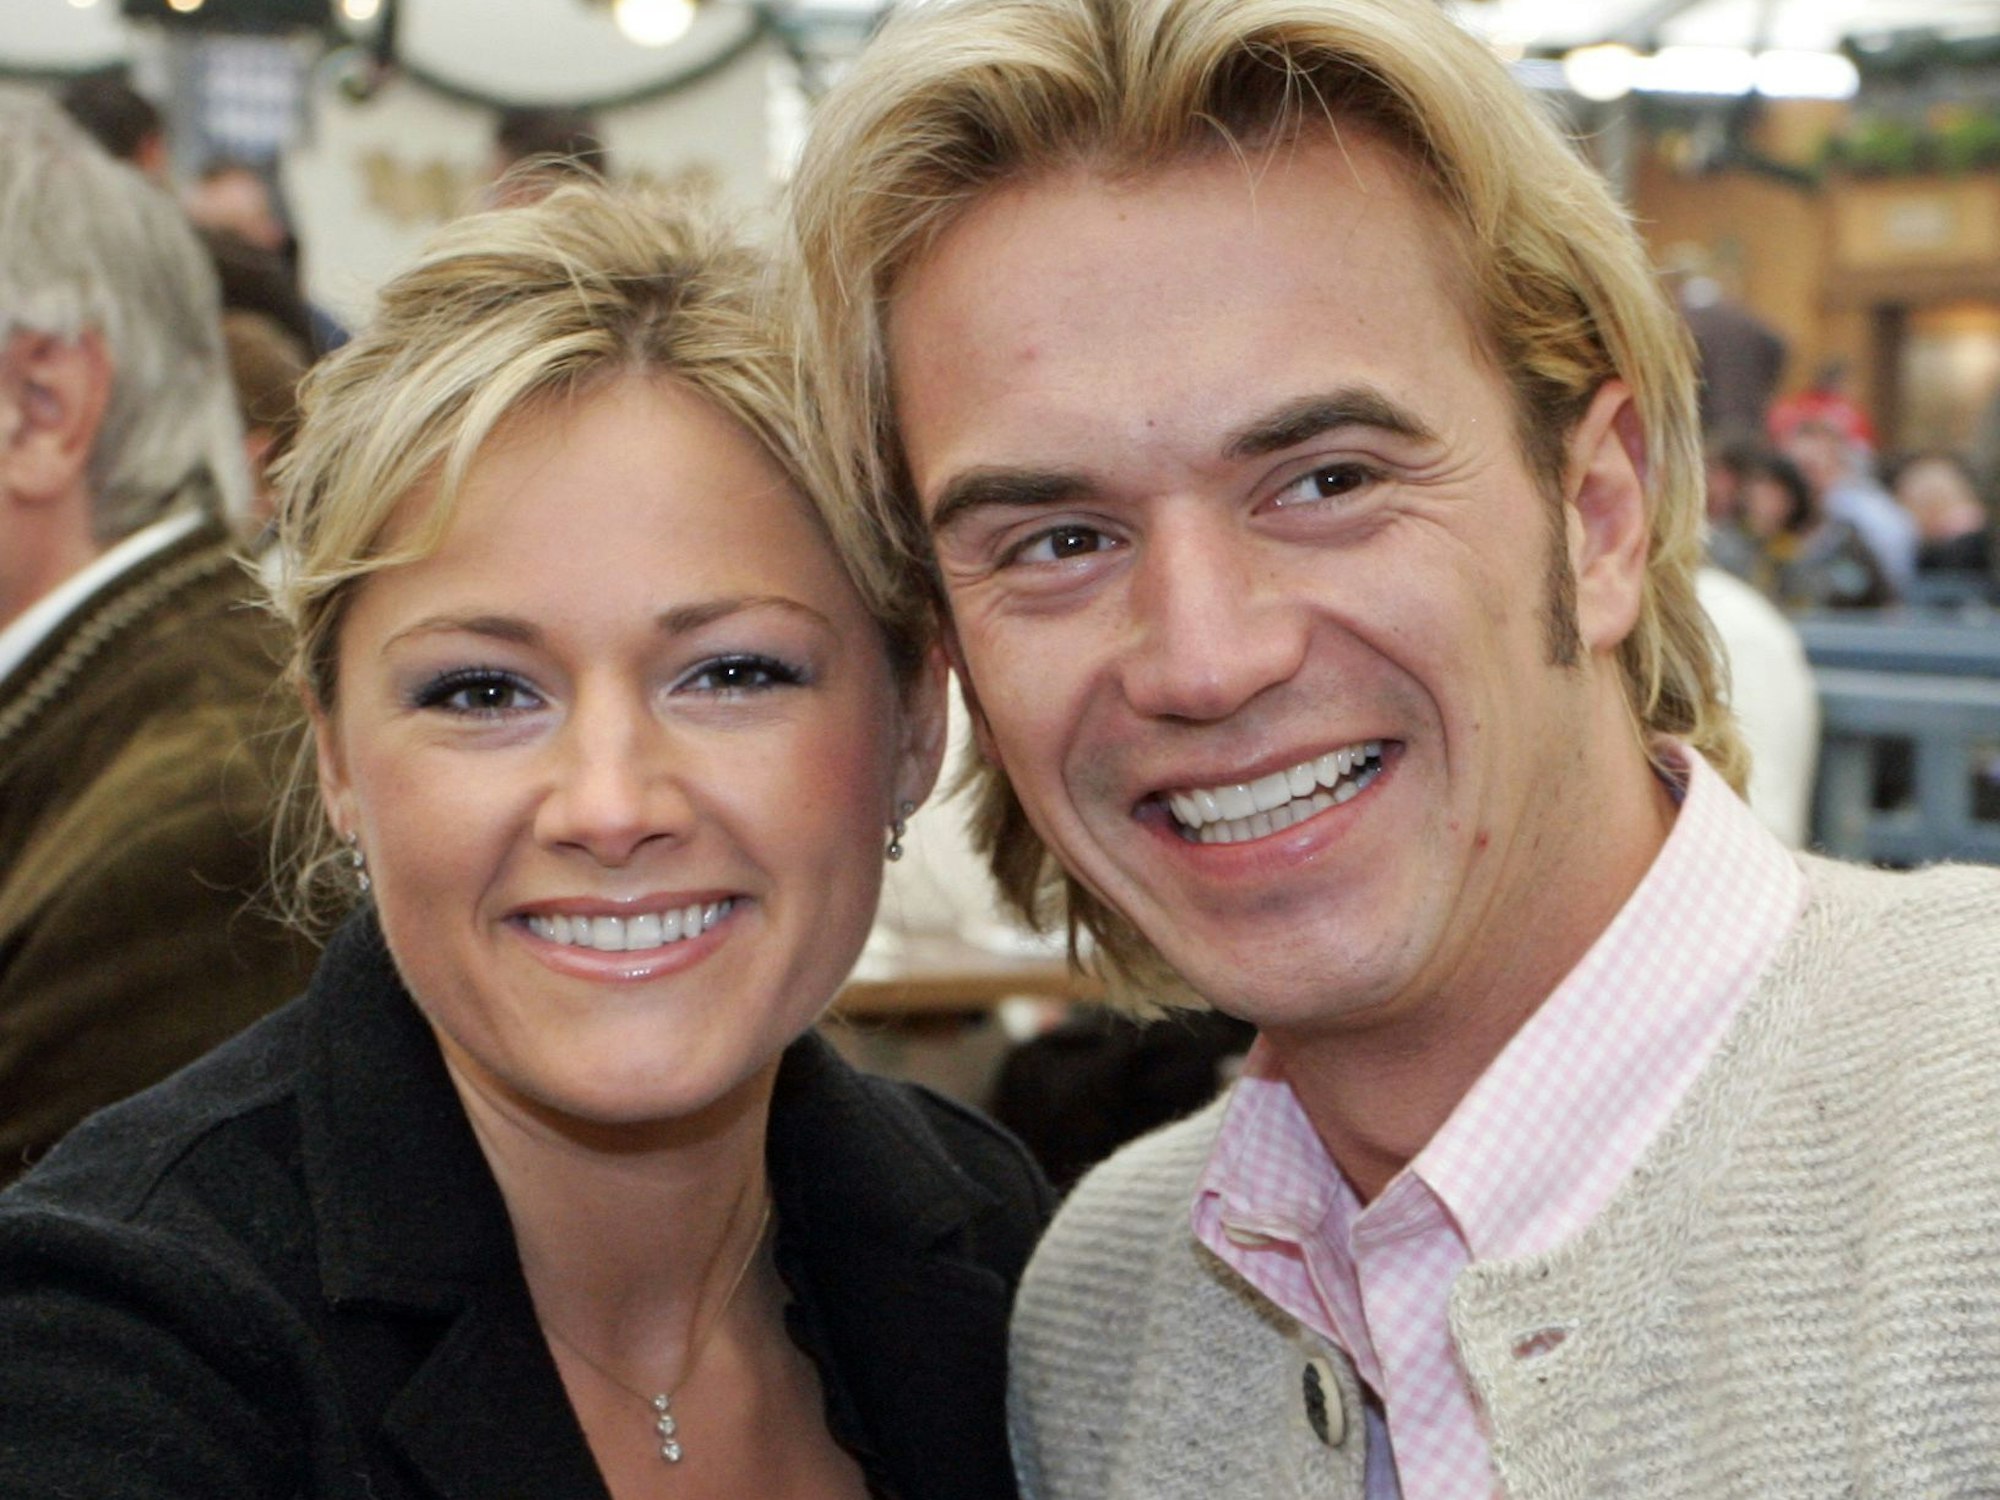 Florian Silbereisen und seine damalige Freundin Helene Fischer besuchen im September 2008 das Oktoberfest